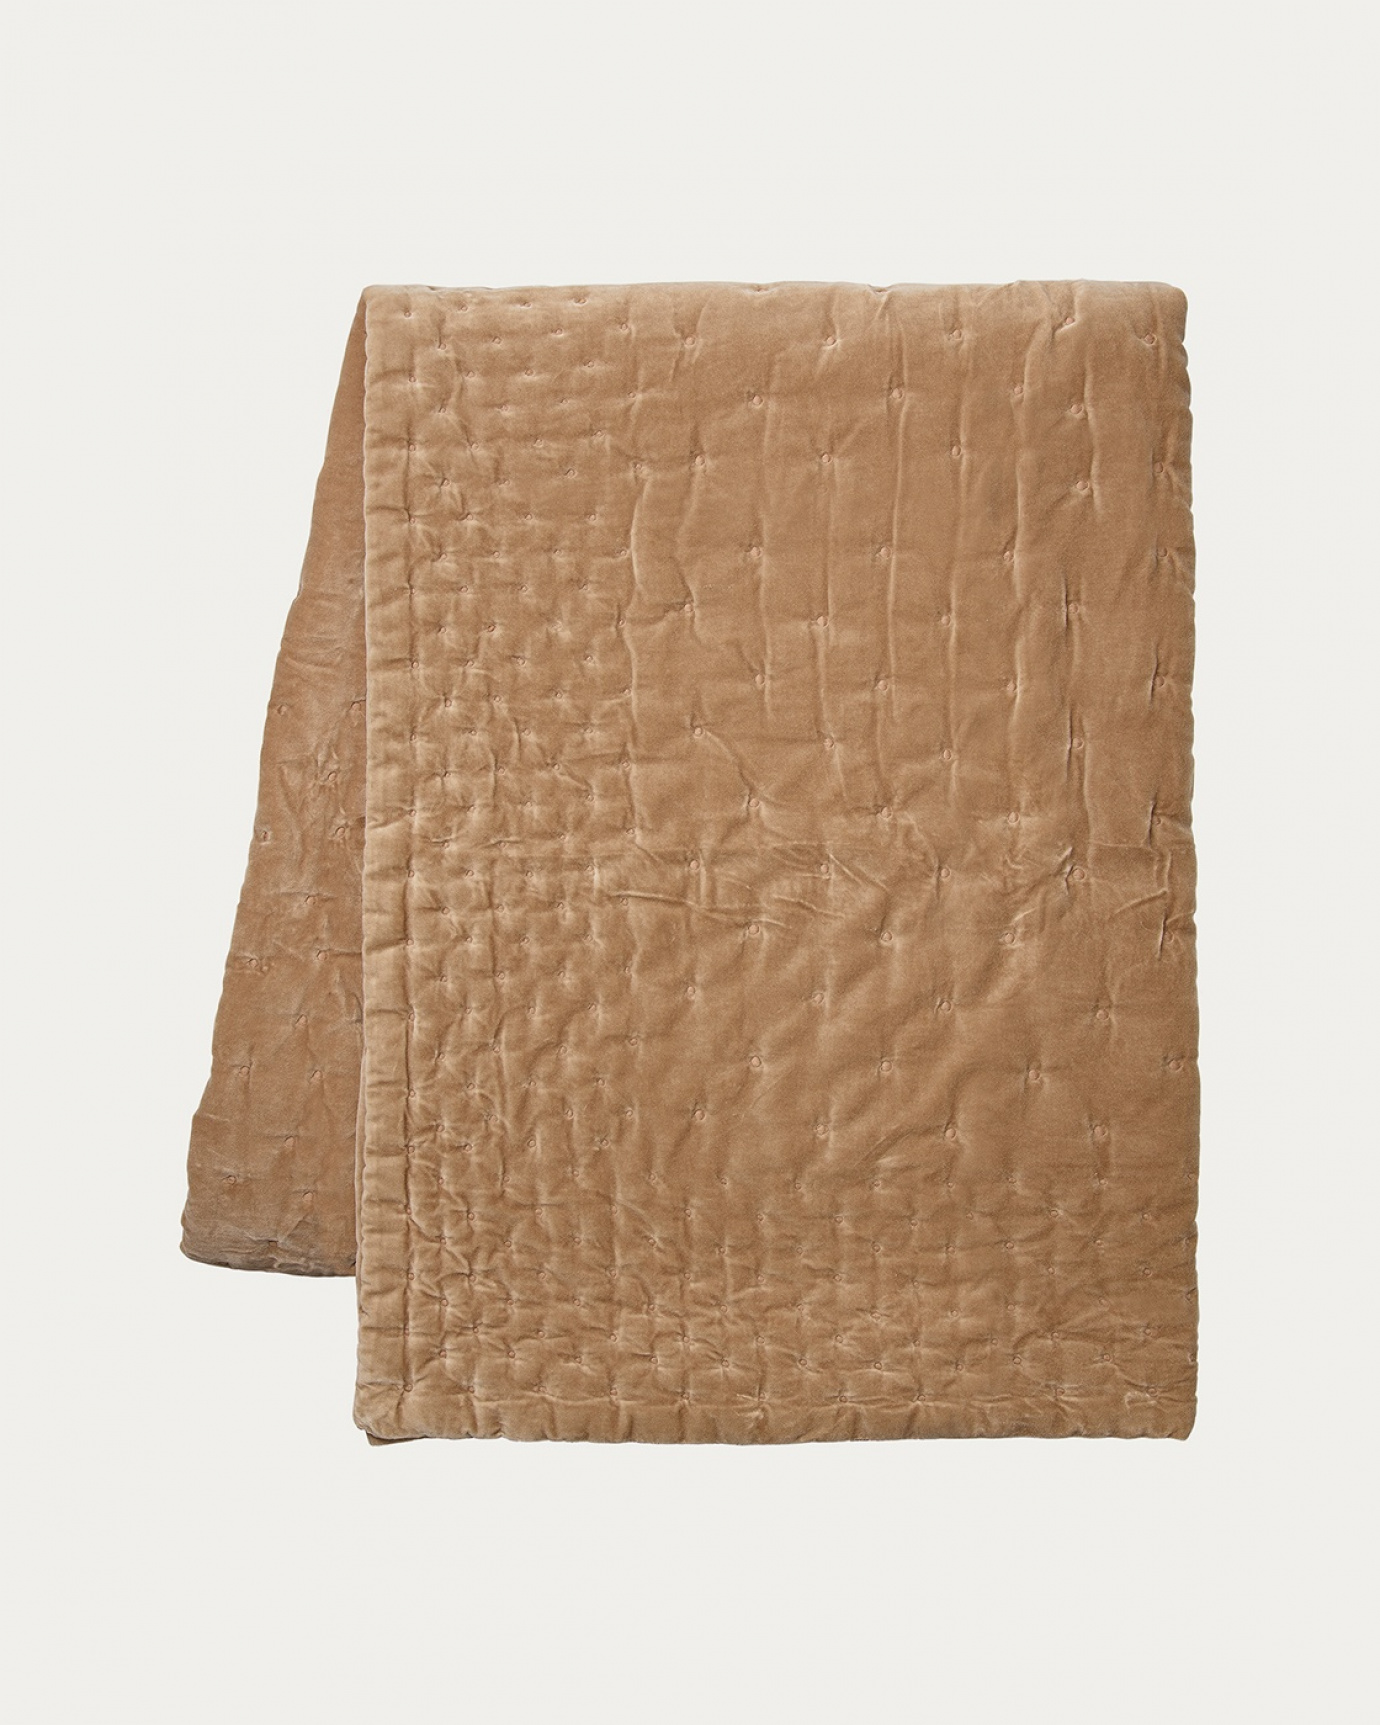 Produktbild kamelbraun Tagesdecke PAOLO aus weichem Baumwollsamt für Doppelbett von LINUM DESIGN. Größe 270x260 cm.